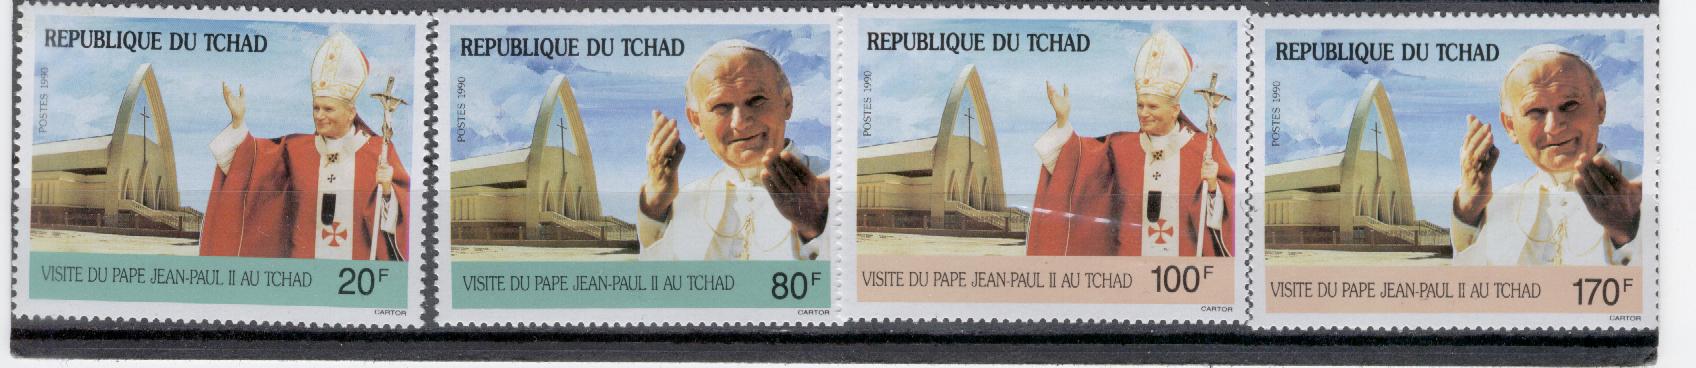 15030 - Ciad - serie completa nuova: Visita di S. S. Giovanni Paolo II